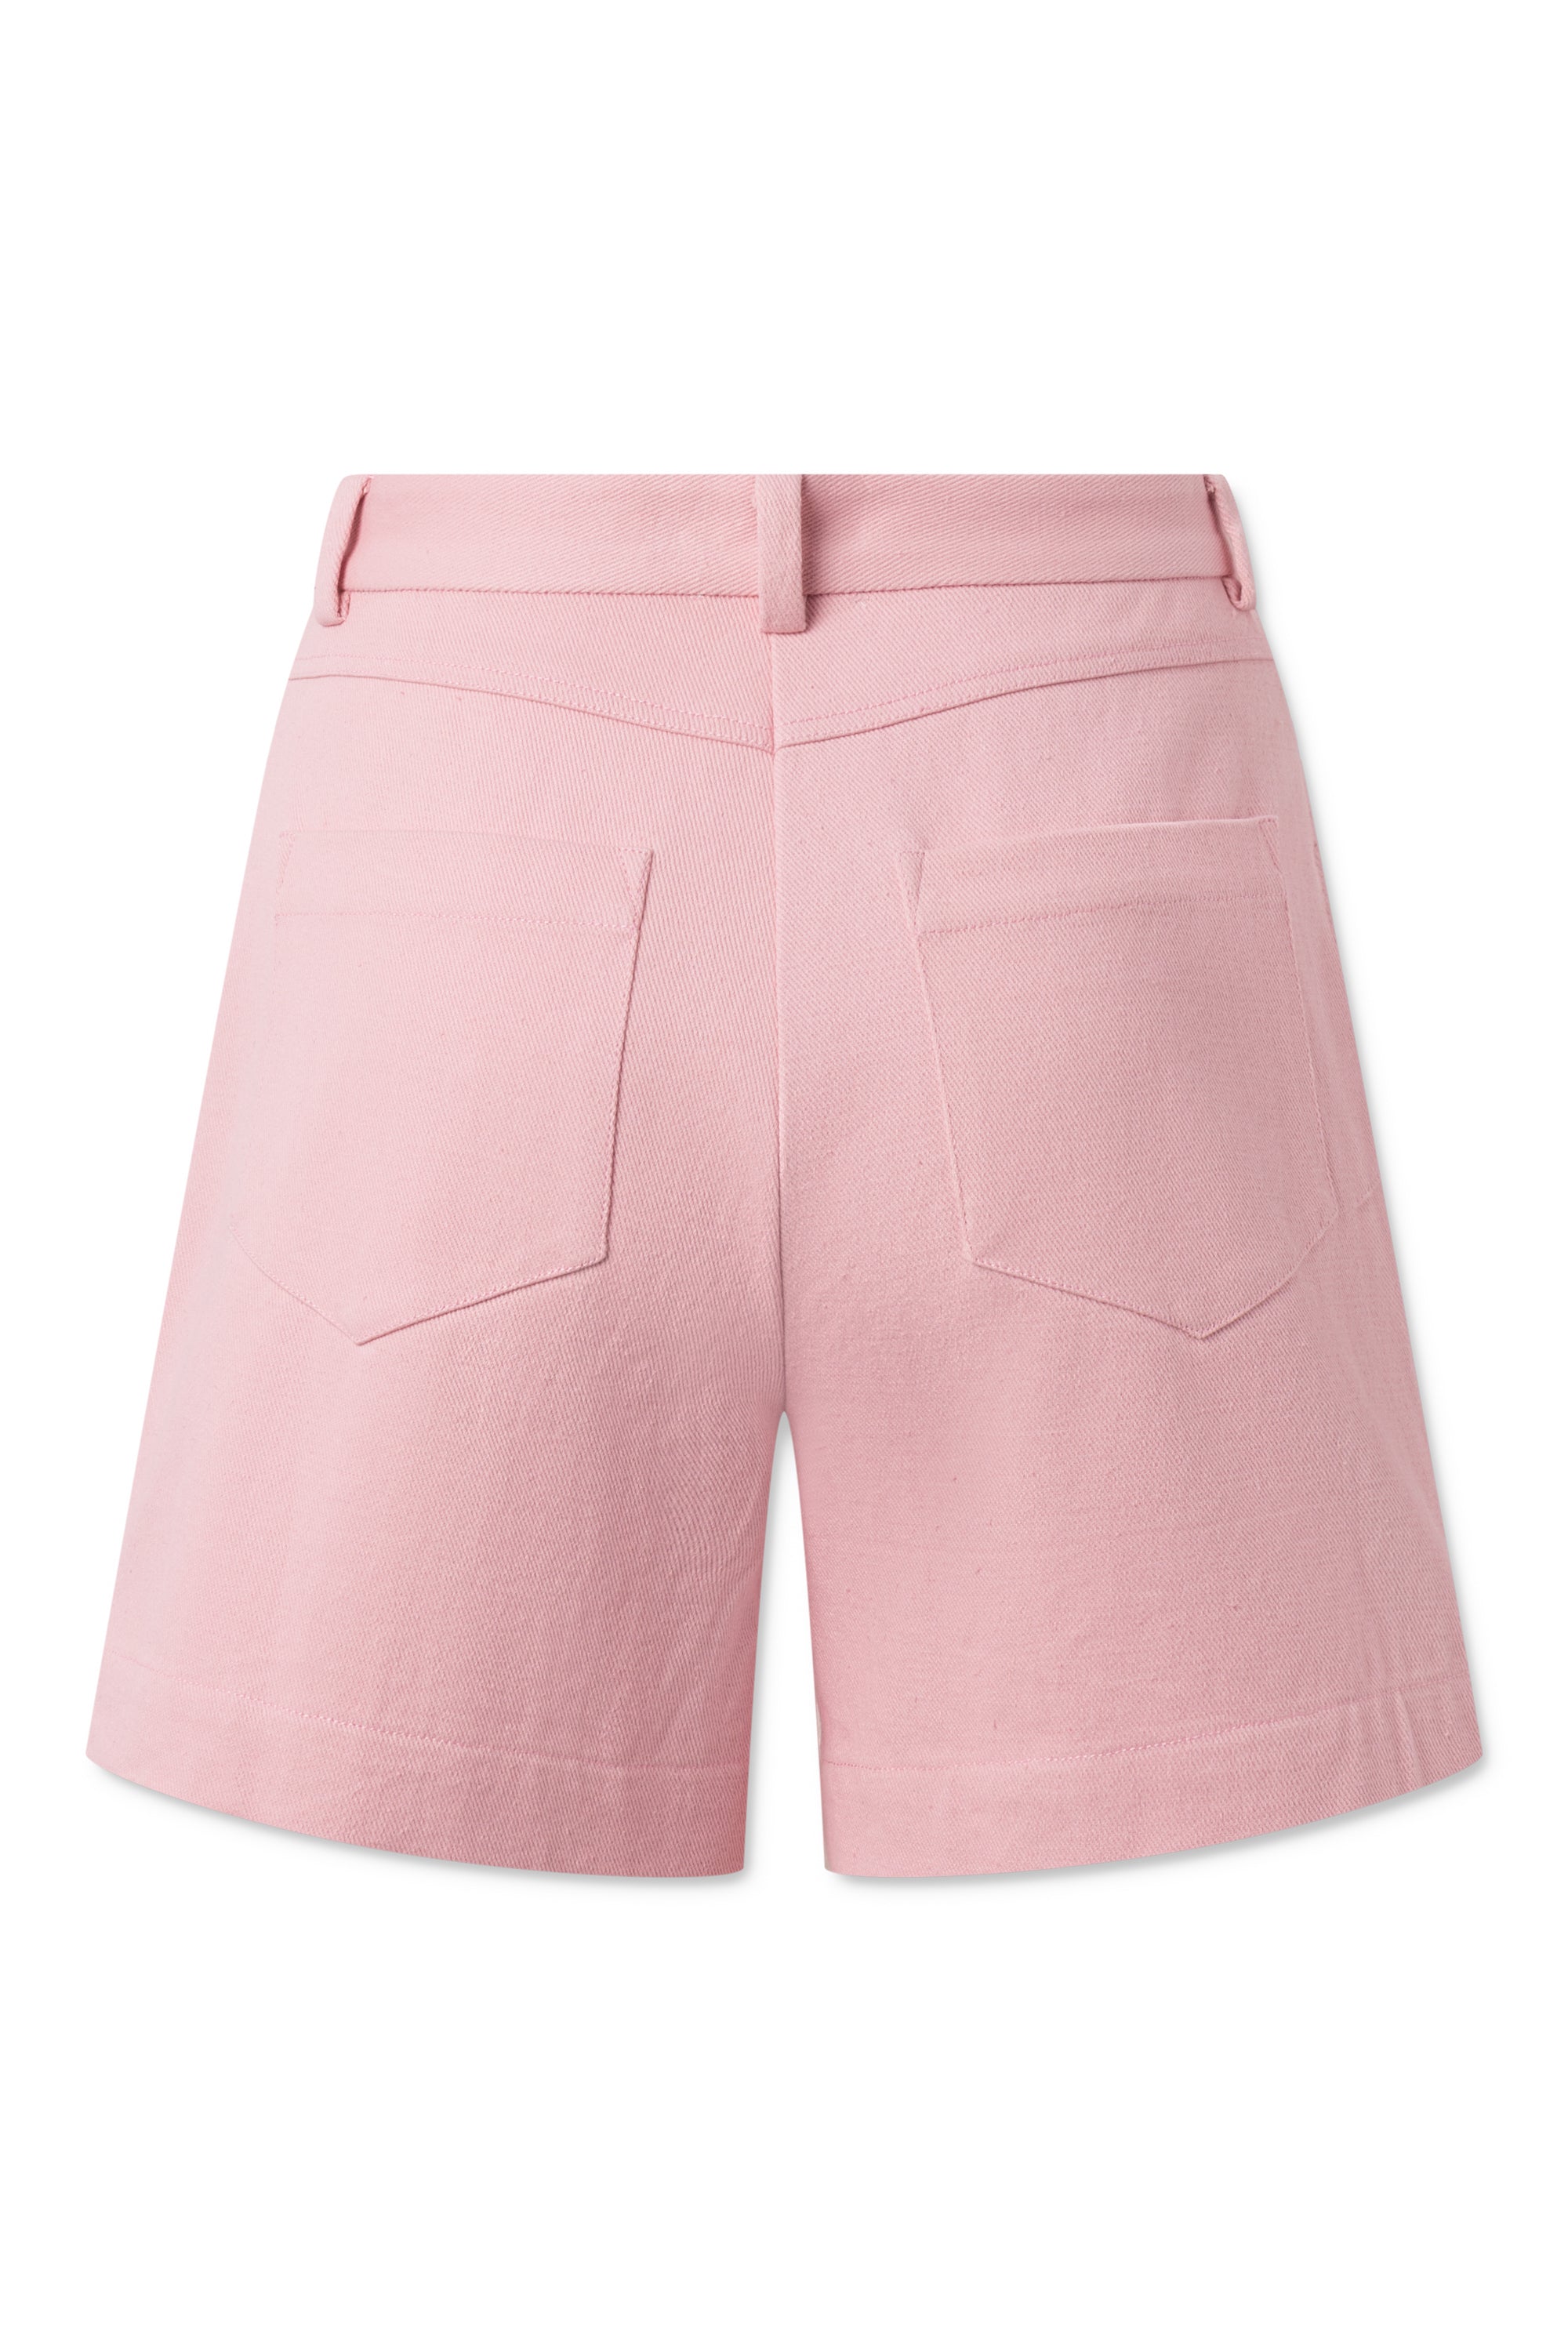 nué notes Bryson Shorts SHORTS 303 Pink